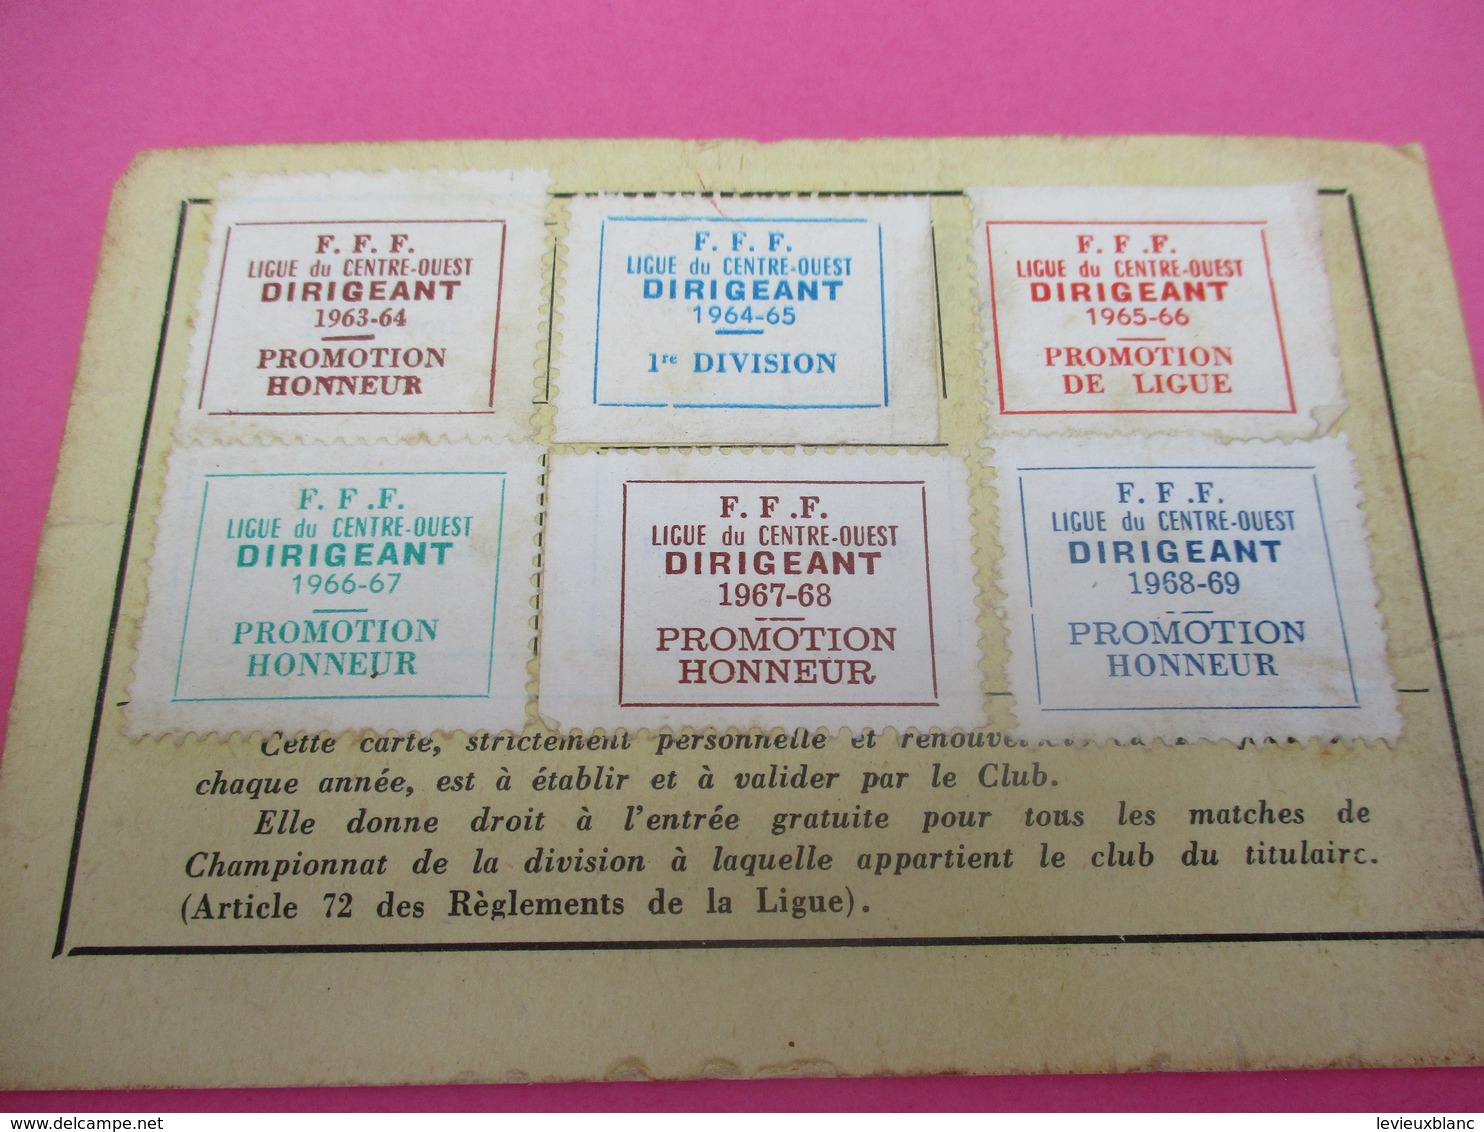 Carte De Dirigeant/Fédération Française De Football/Ligue Du Centre-Ouest/Entente Des Clubs Tullistes/1963-69   SPO337 - Other & Unclassified